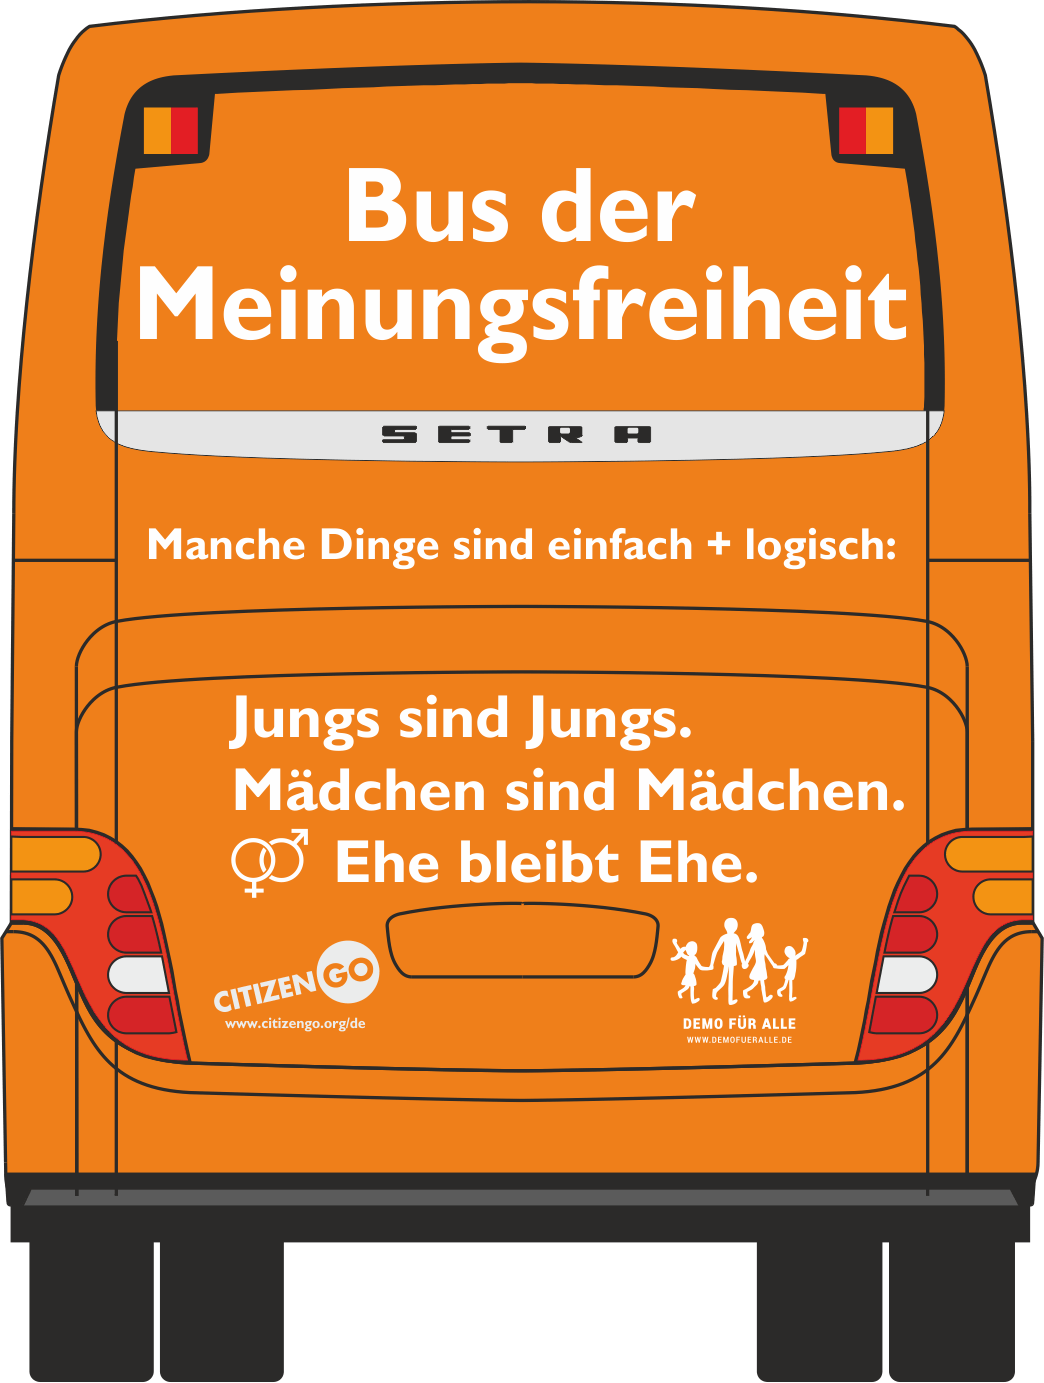 “Bus der Meinungsfreiheit” startet in München: Seien Sie dabei am Mi., 6. Sep. 15 Uhr am Stachus/Karlsplatz!